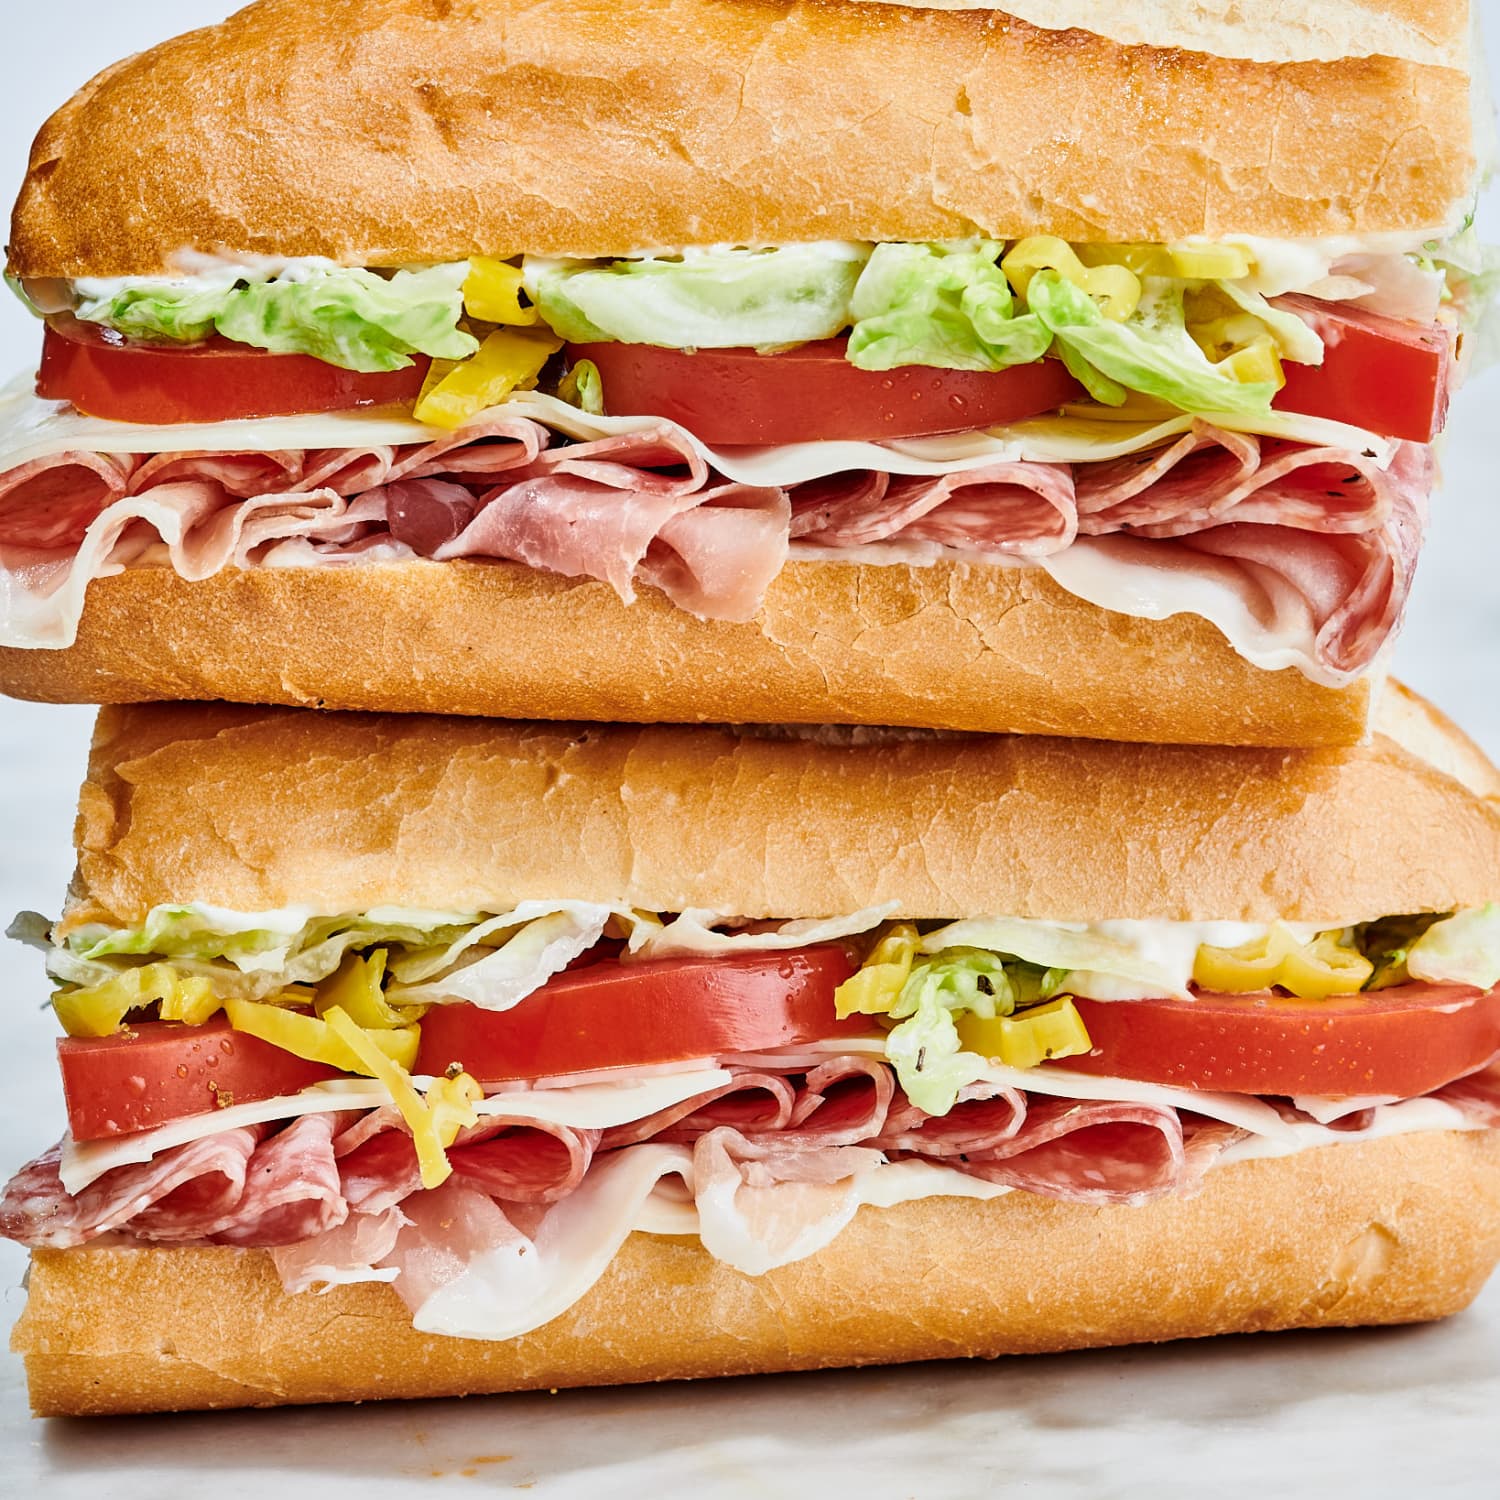 Submarine sandwiches, Zapisz 54% dostępne duża sprzedaż - www